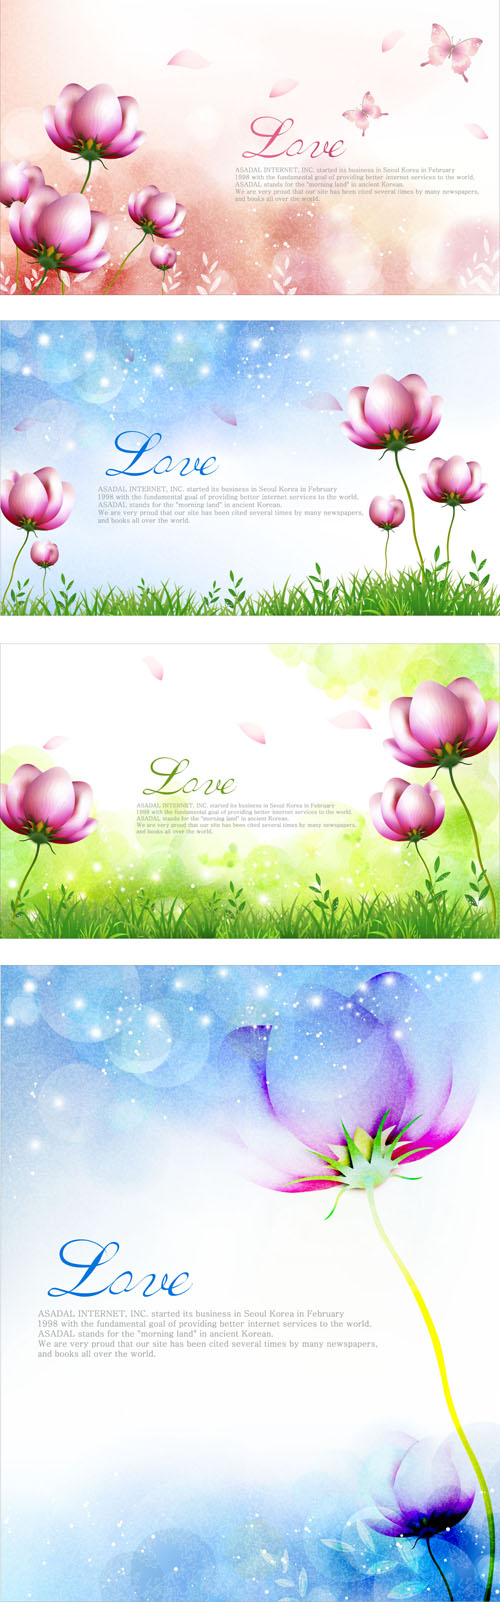 Elegant dream flowers background vector 03